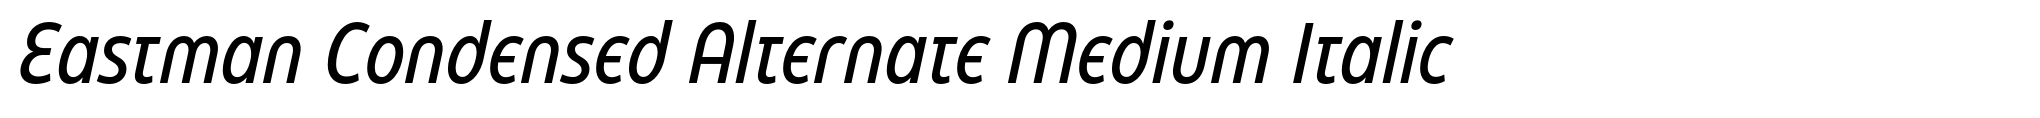 Eastman Condensed Alternate Medium Italic image